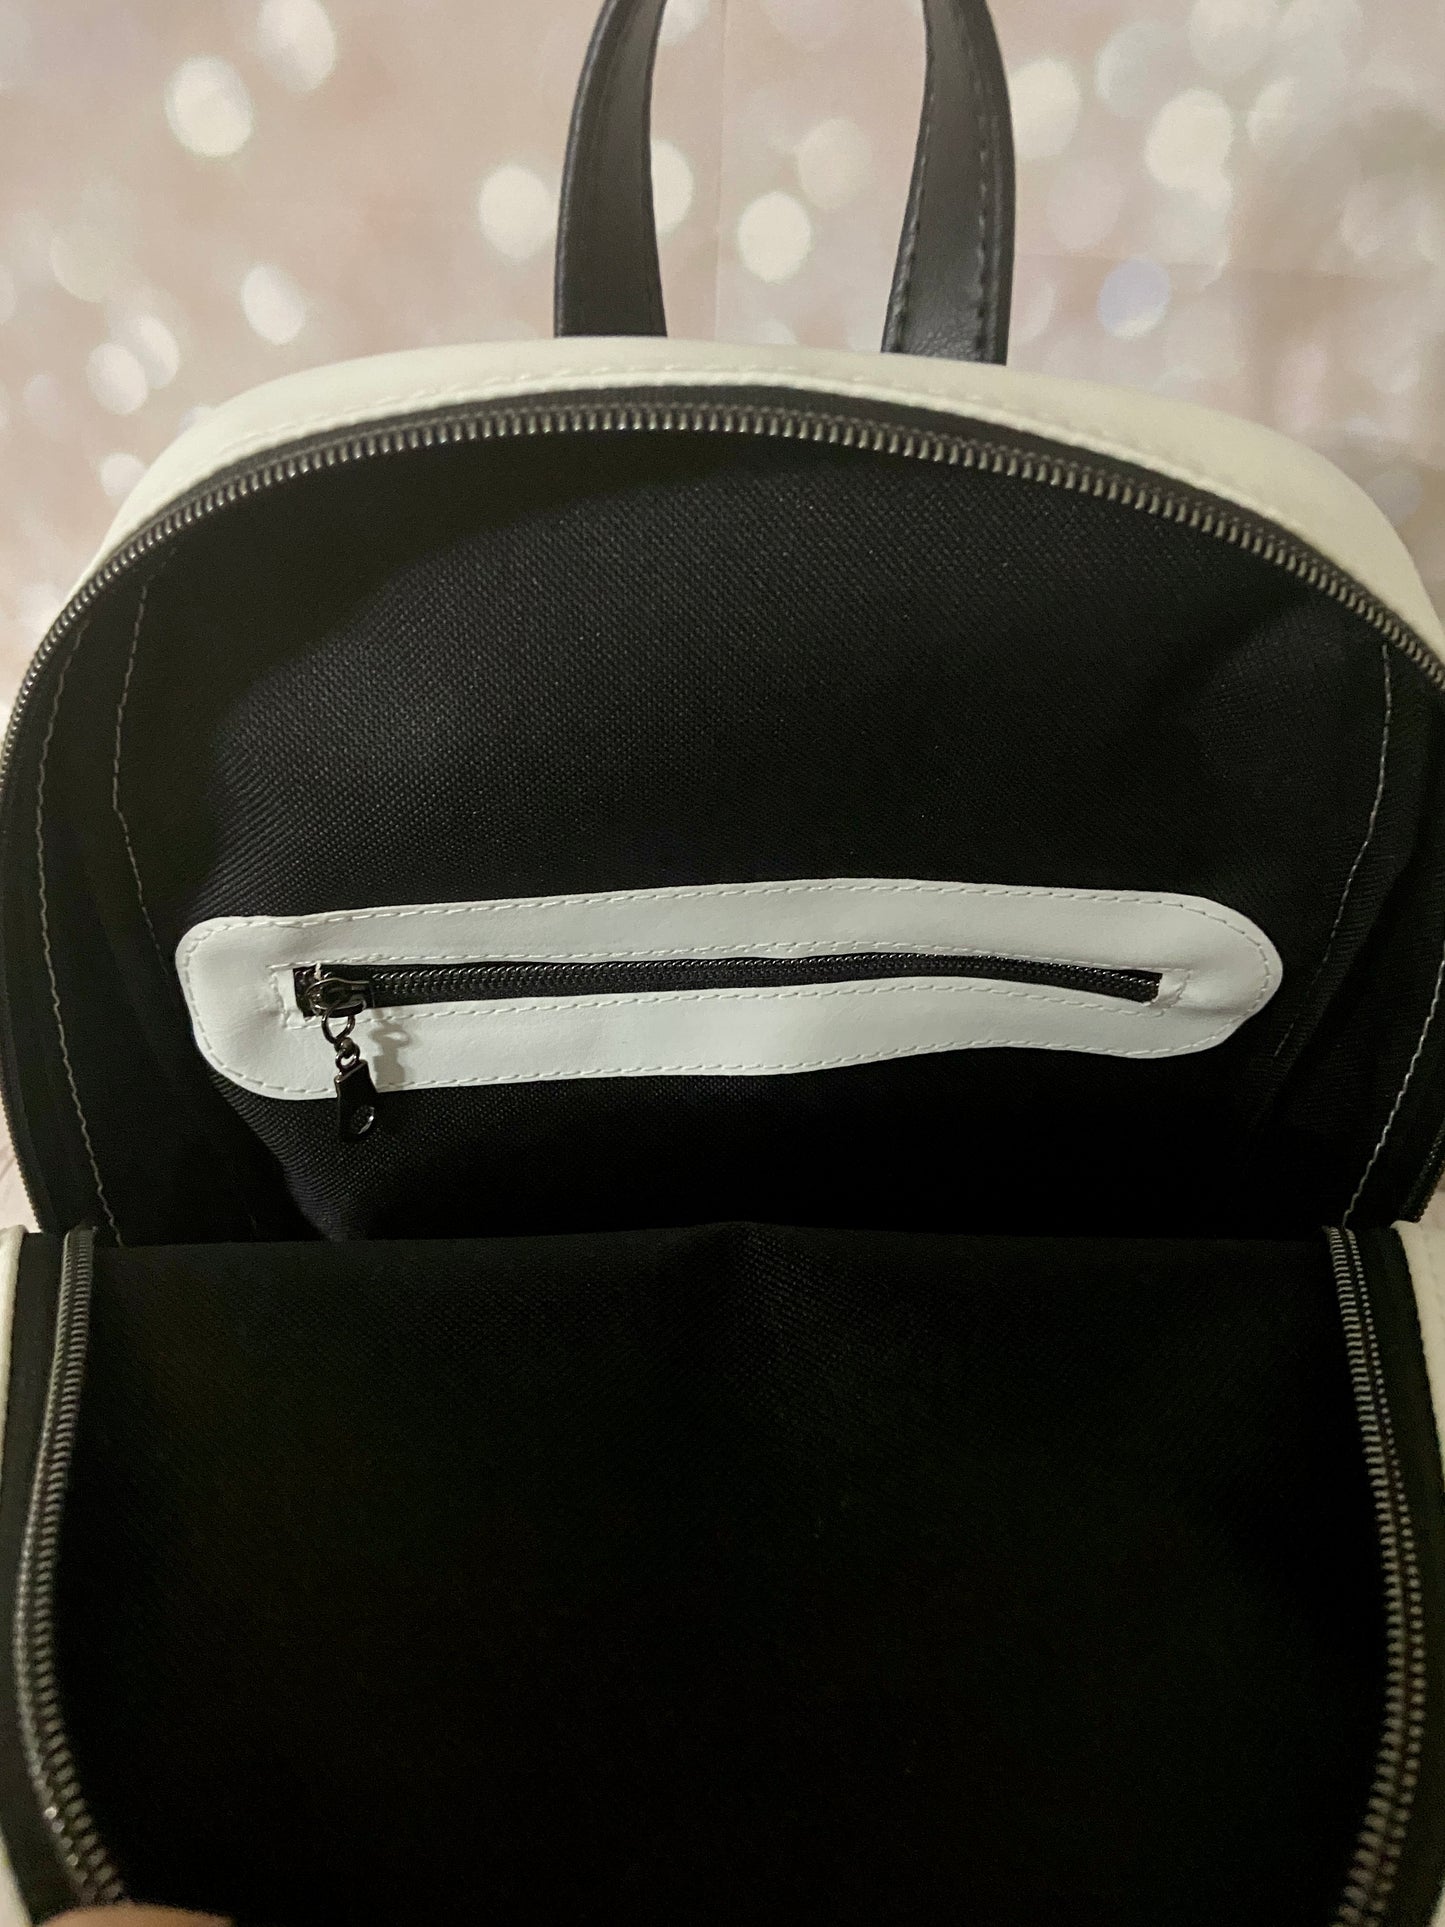 Custom White Ghost Mini Backpack